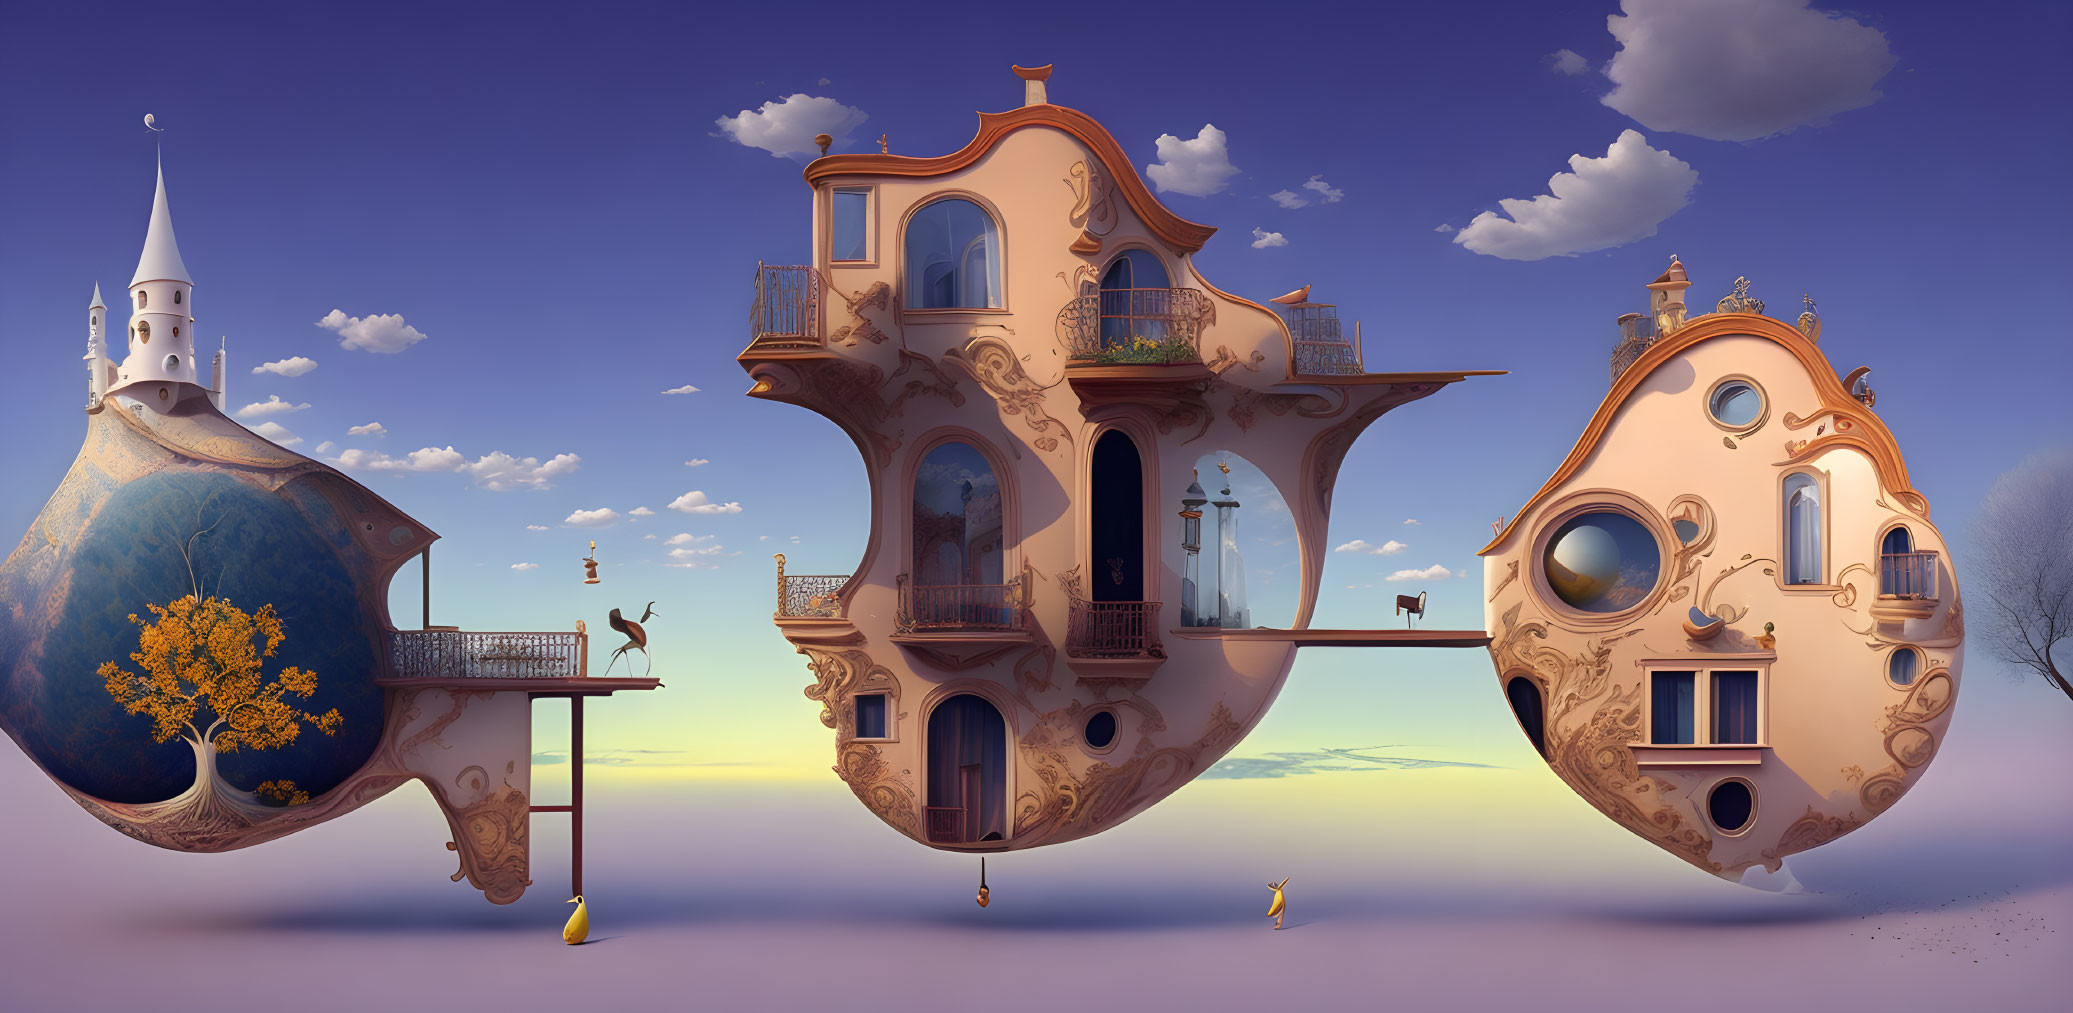 Whimsical surreal artwork: floating buildings, bridges, purple sky.